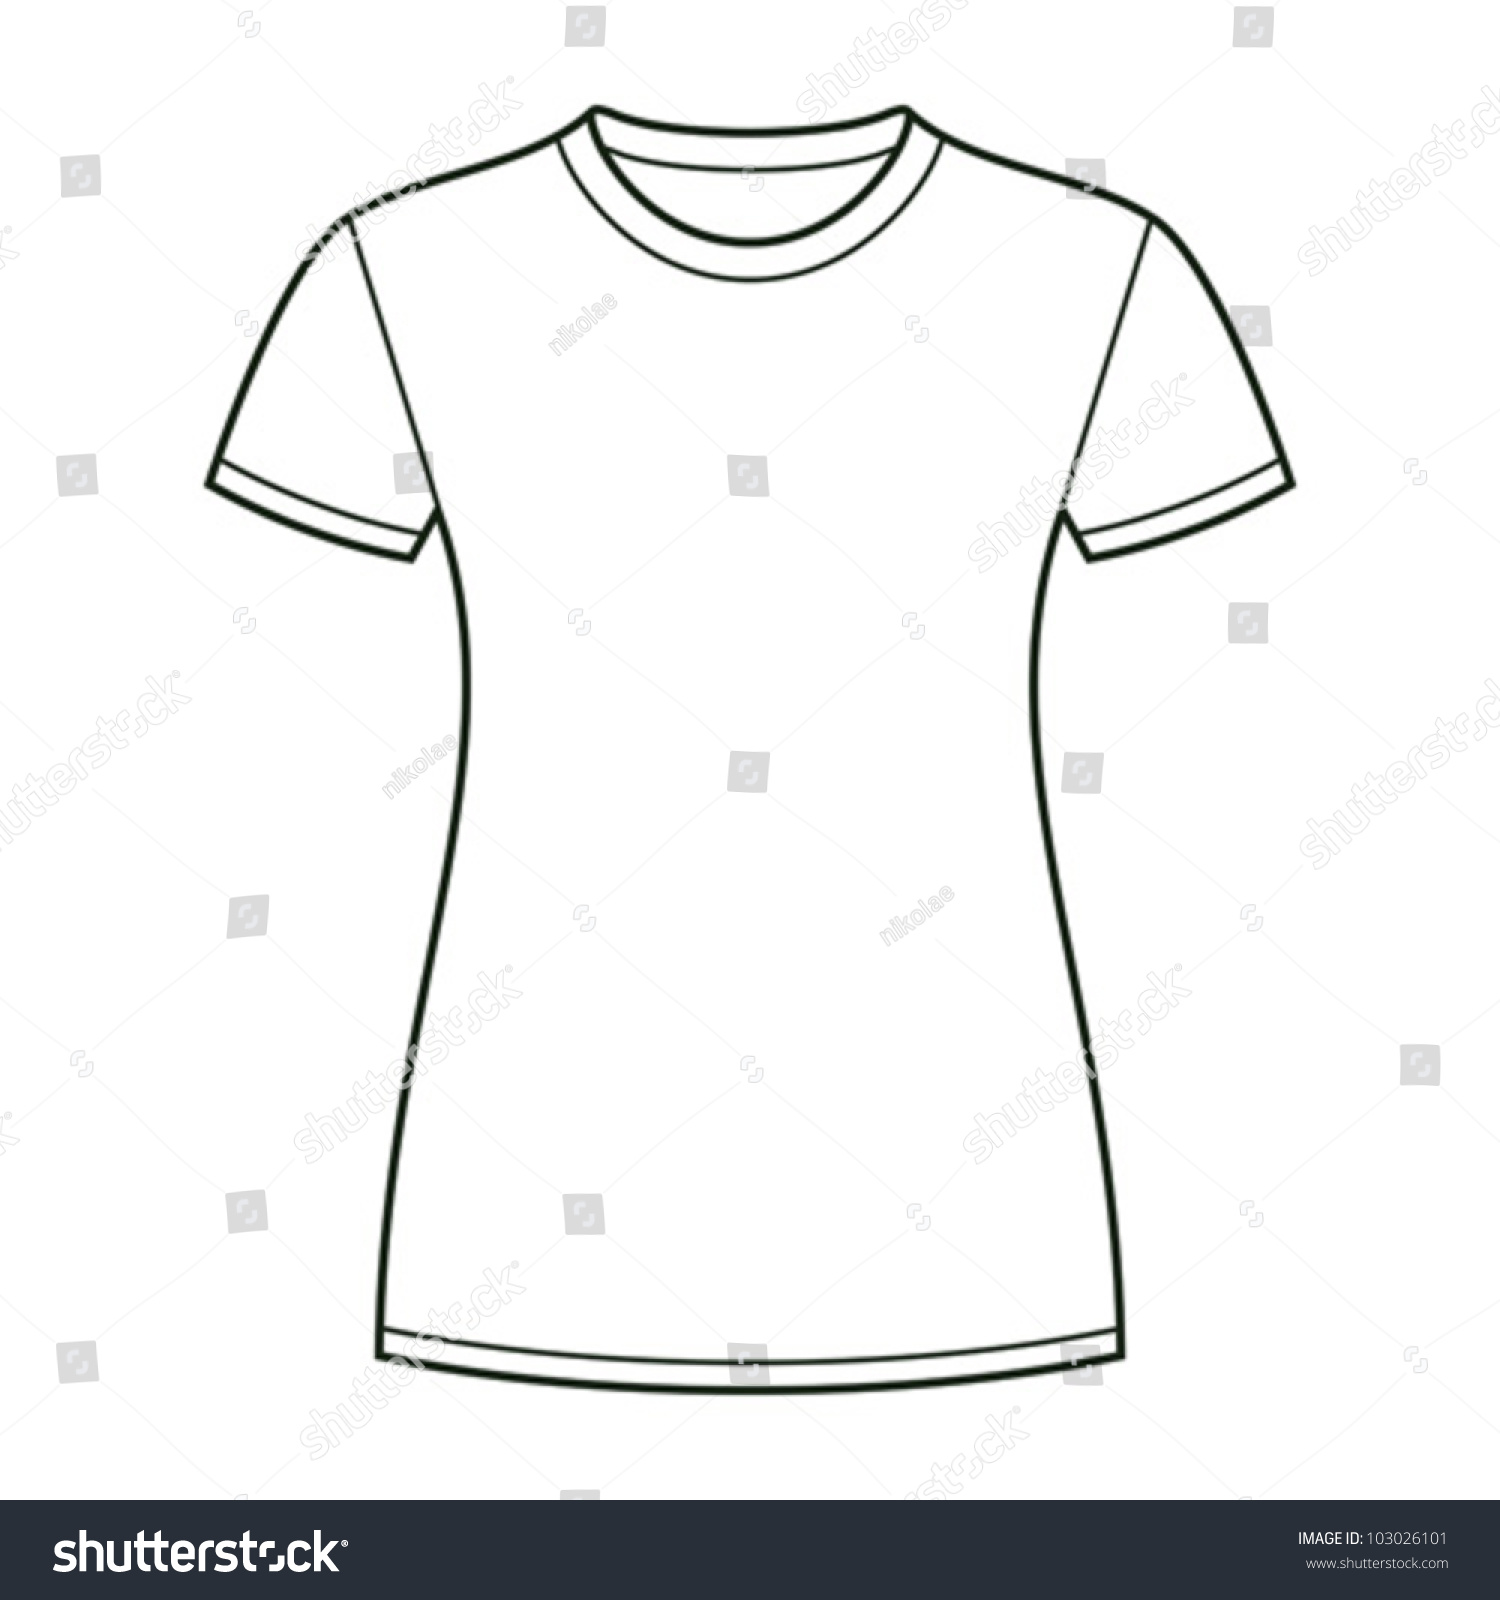 White T-Shirt Design Template Stock Vector Illustration 103026101 ...